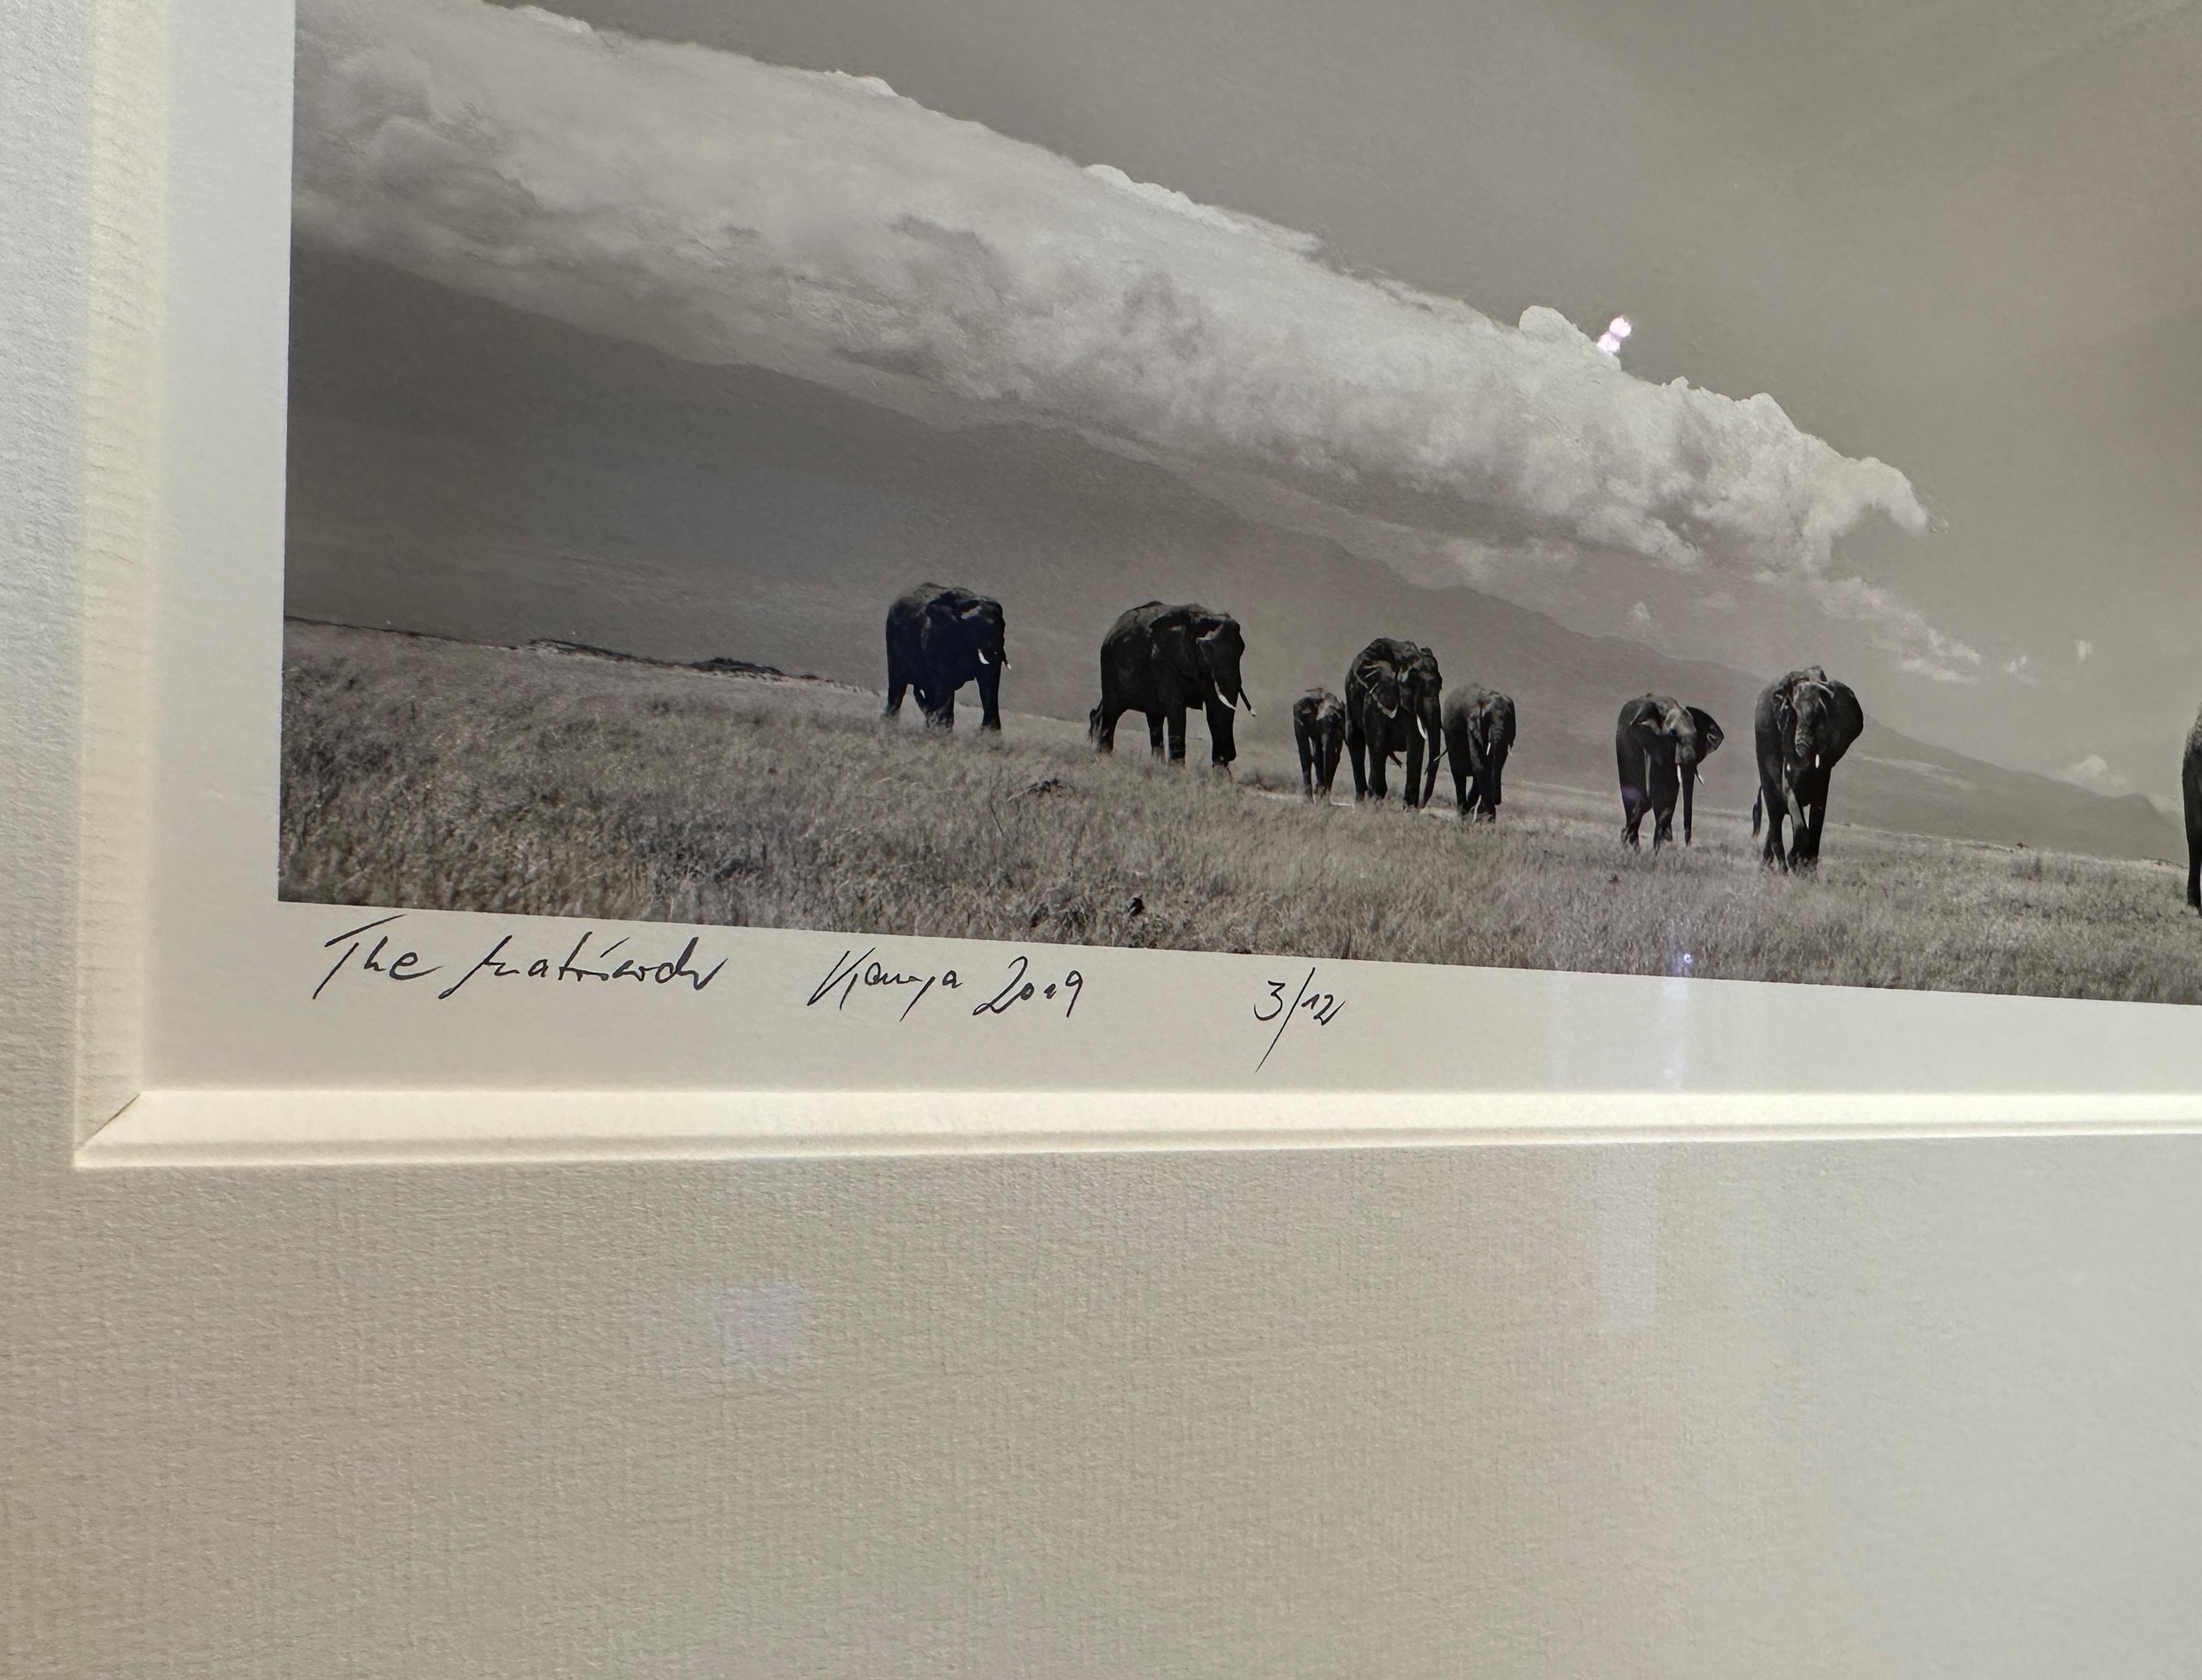 Le matriarche, l'éléphant, l'animal, la faune, la photographie en noir et blanc - Contemporain Photograph par Joachim Schmeisser